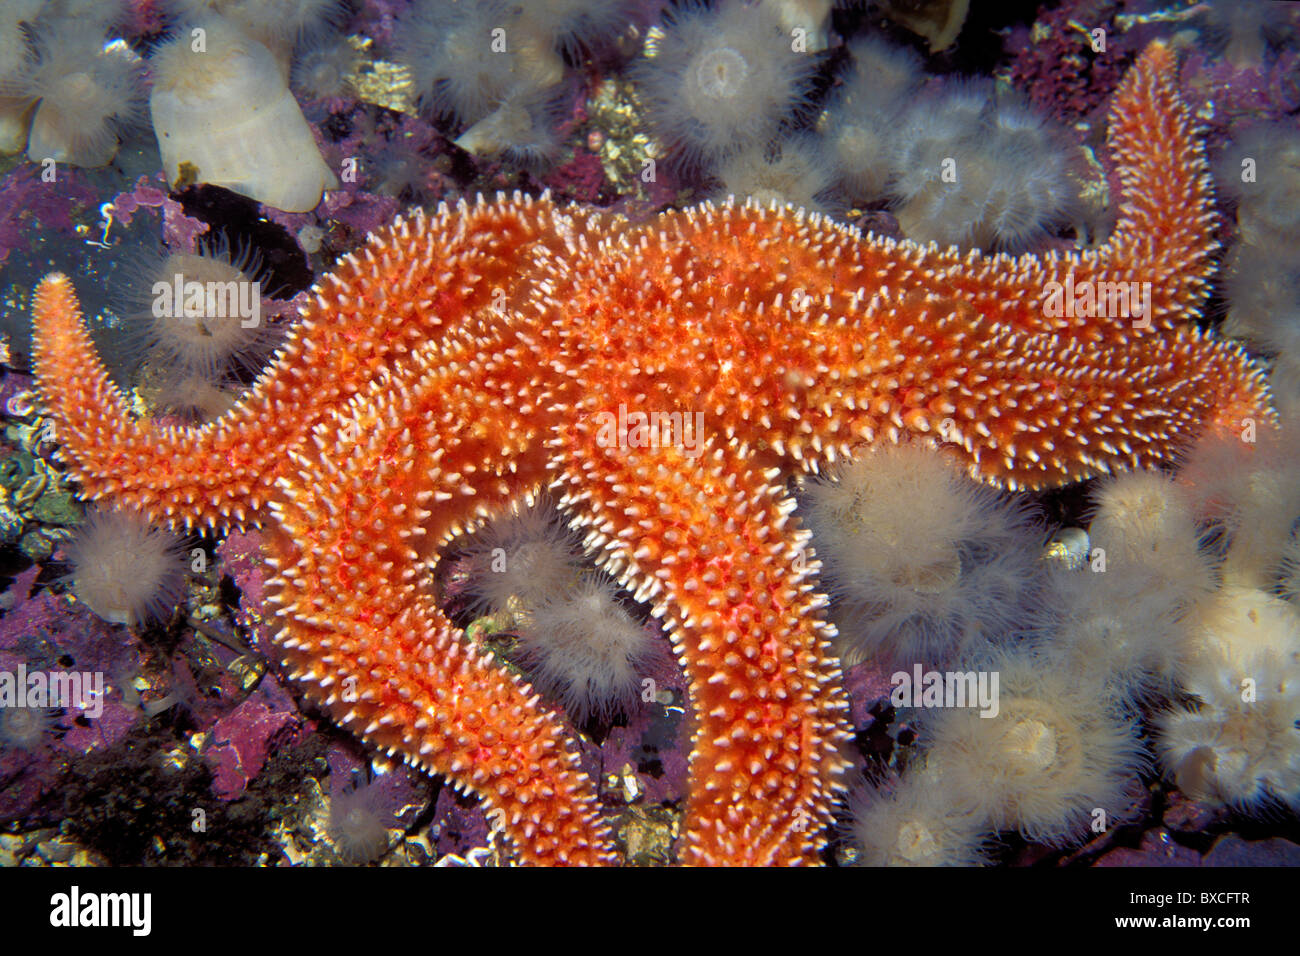 Rainbow star, Orthasterias koehleri, Colombie-Britannique, Océan Pacifique Banque D'Images